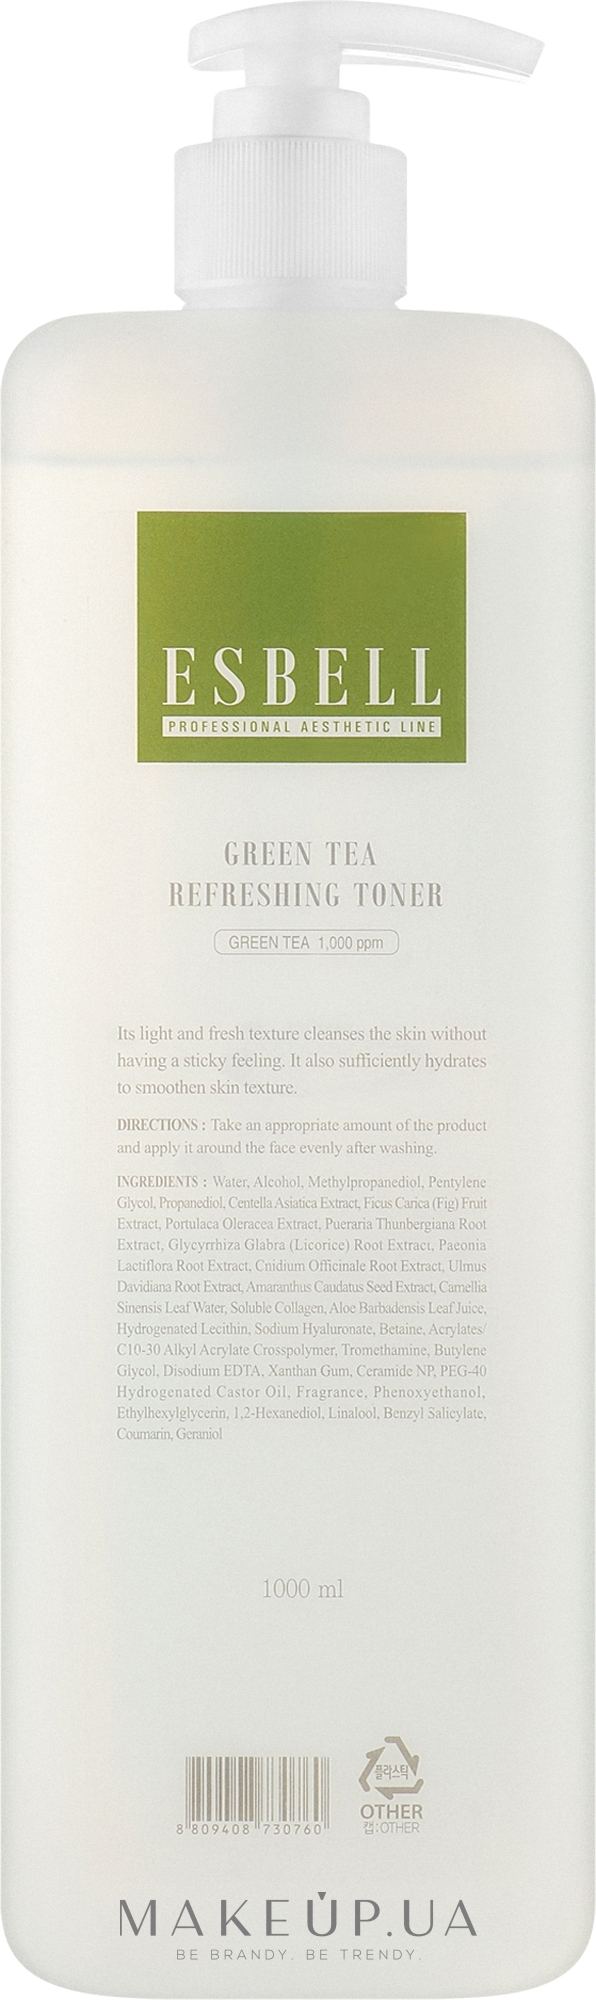 Тонер для лица освежающий с экстрактом зеленого чая - Dr. Oracle Esbell Green Tea Refreshing Toner — фото 1000ml